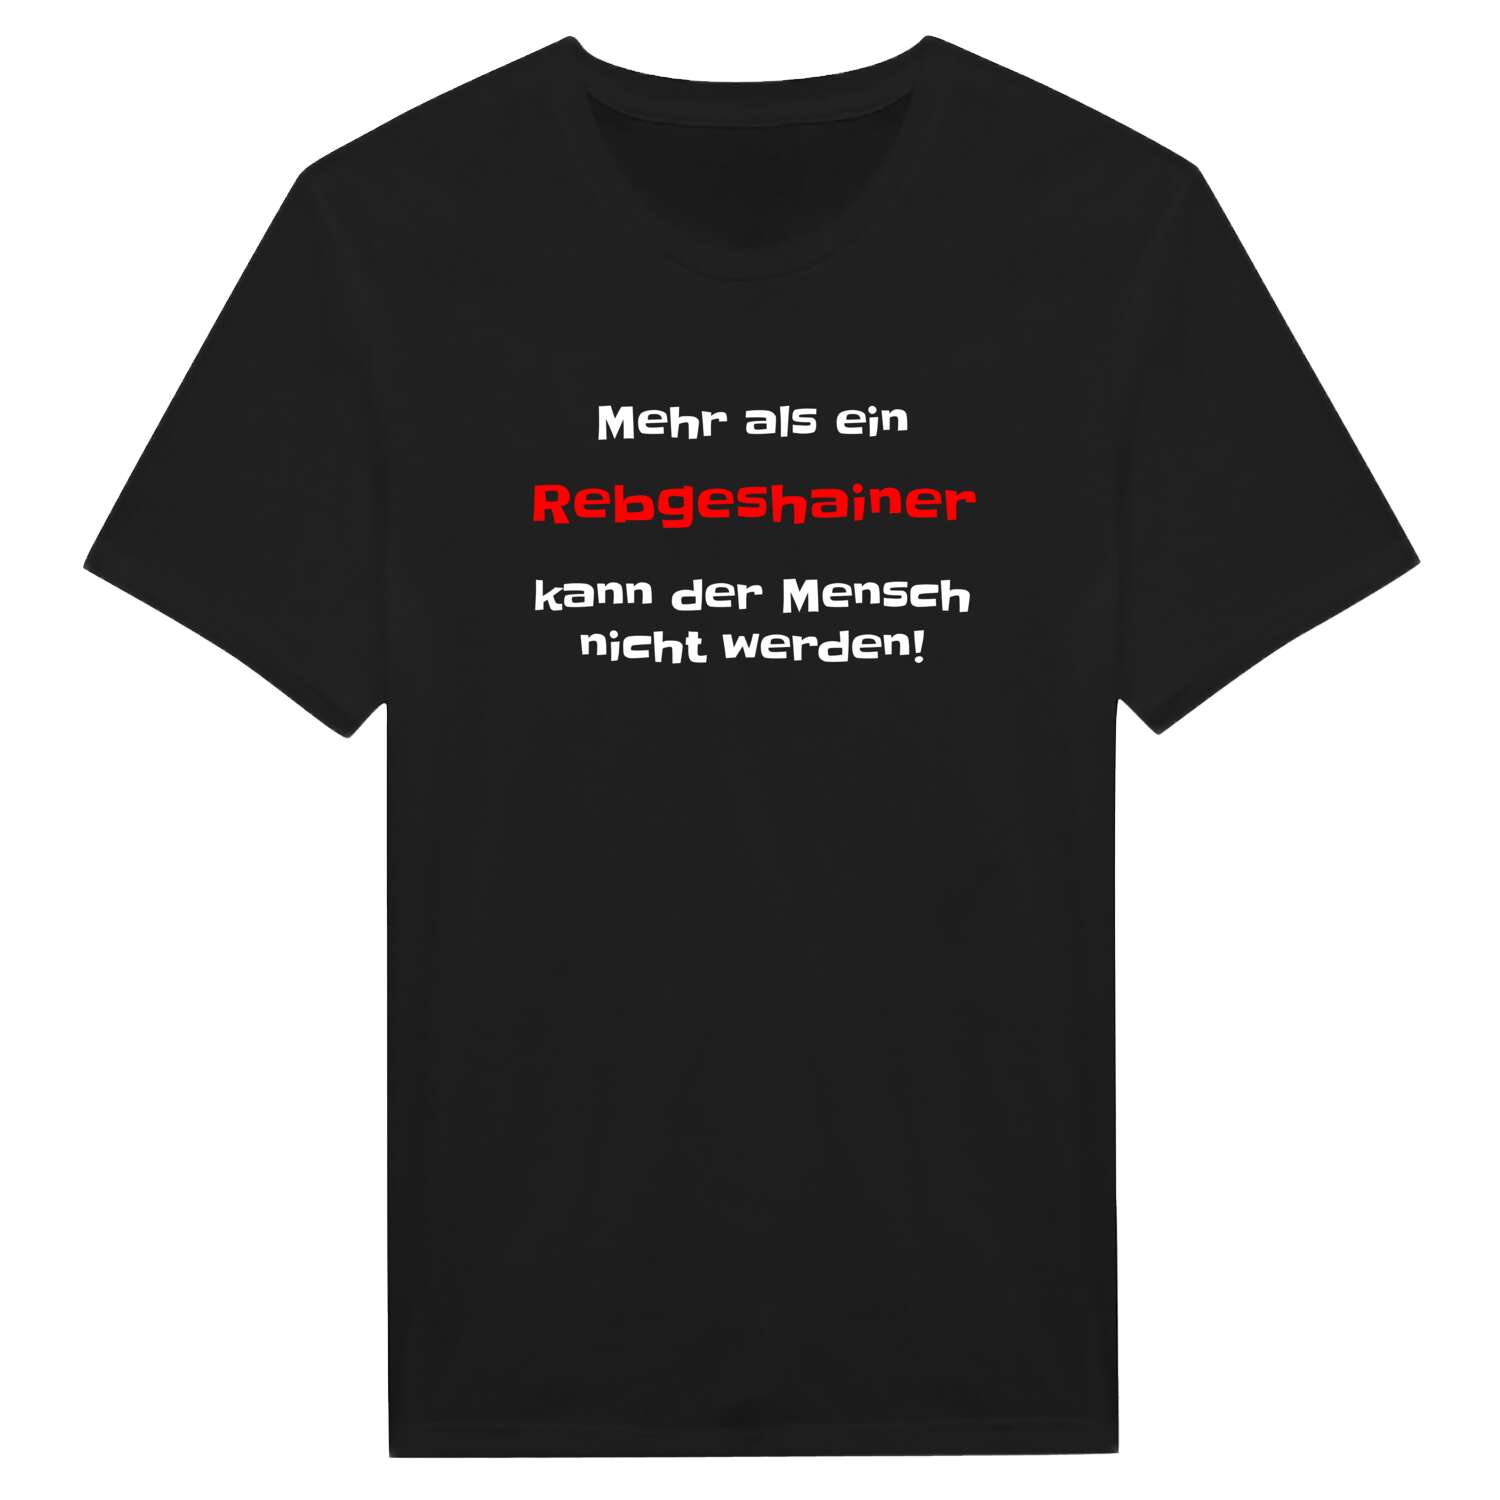 Rebgeshain T-Shirt »Mehr als ein«